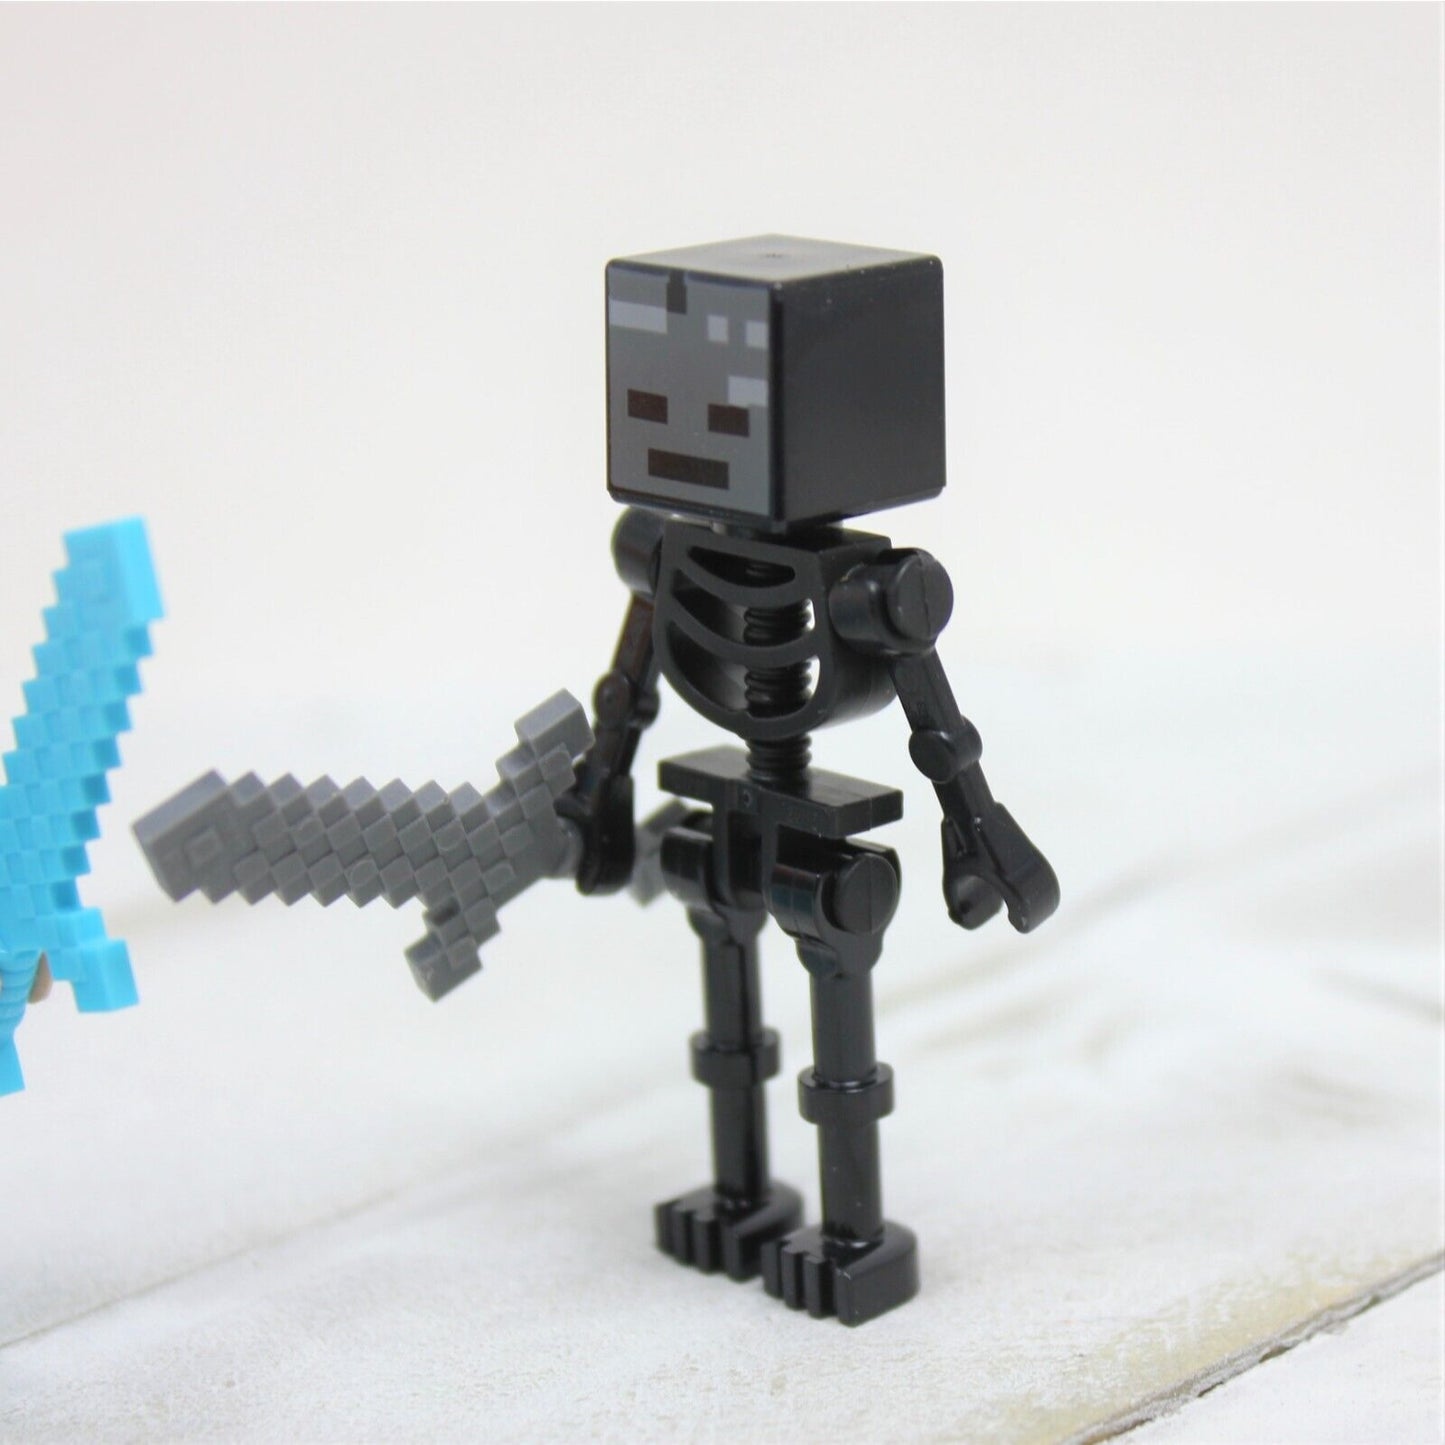 Lego Minecraft Winter Skeleton & Alex Figure, Pick Axe, Sword, & Armor Minifigure